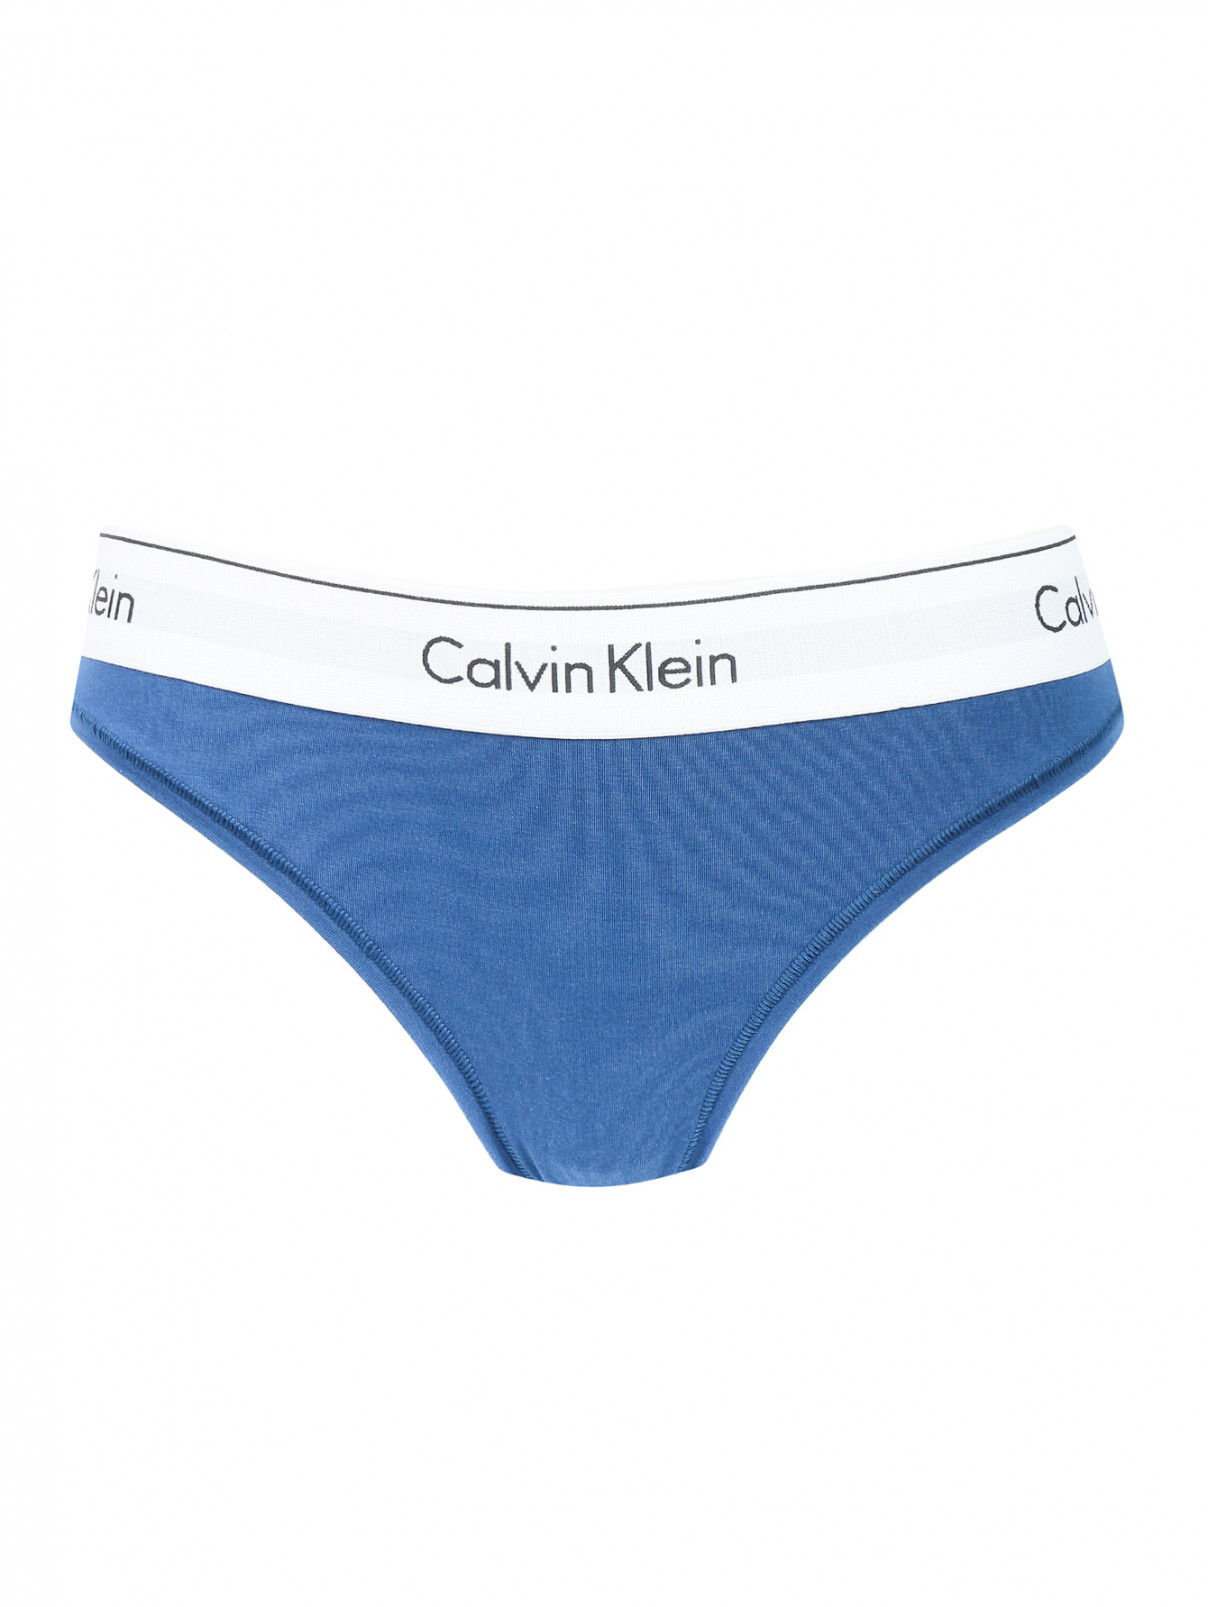 Трусы-слип с контрастной отделкой Calvin Klein  –  Общий вид  – Цвет:  Синий